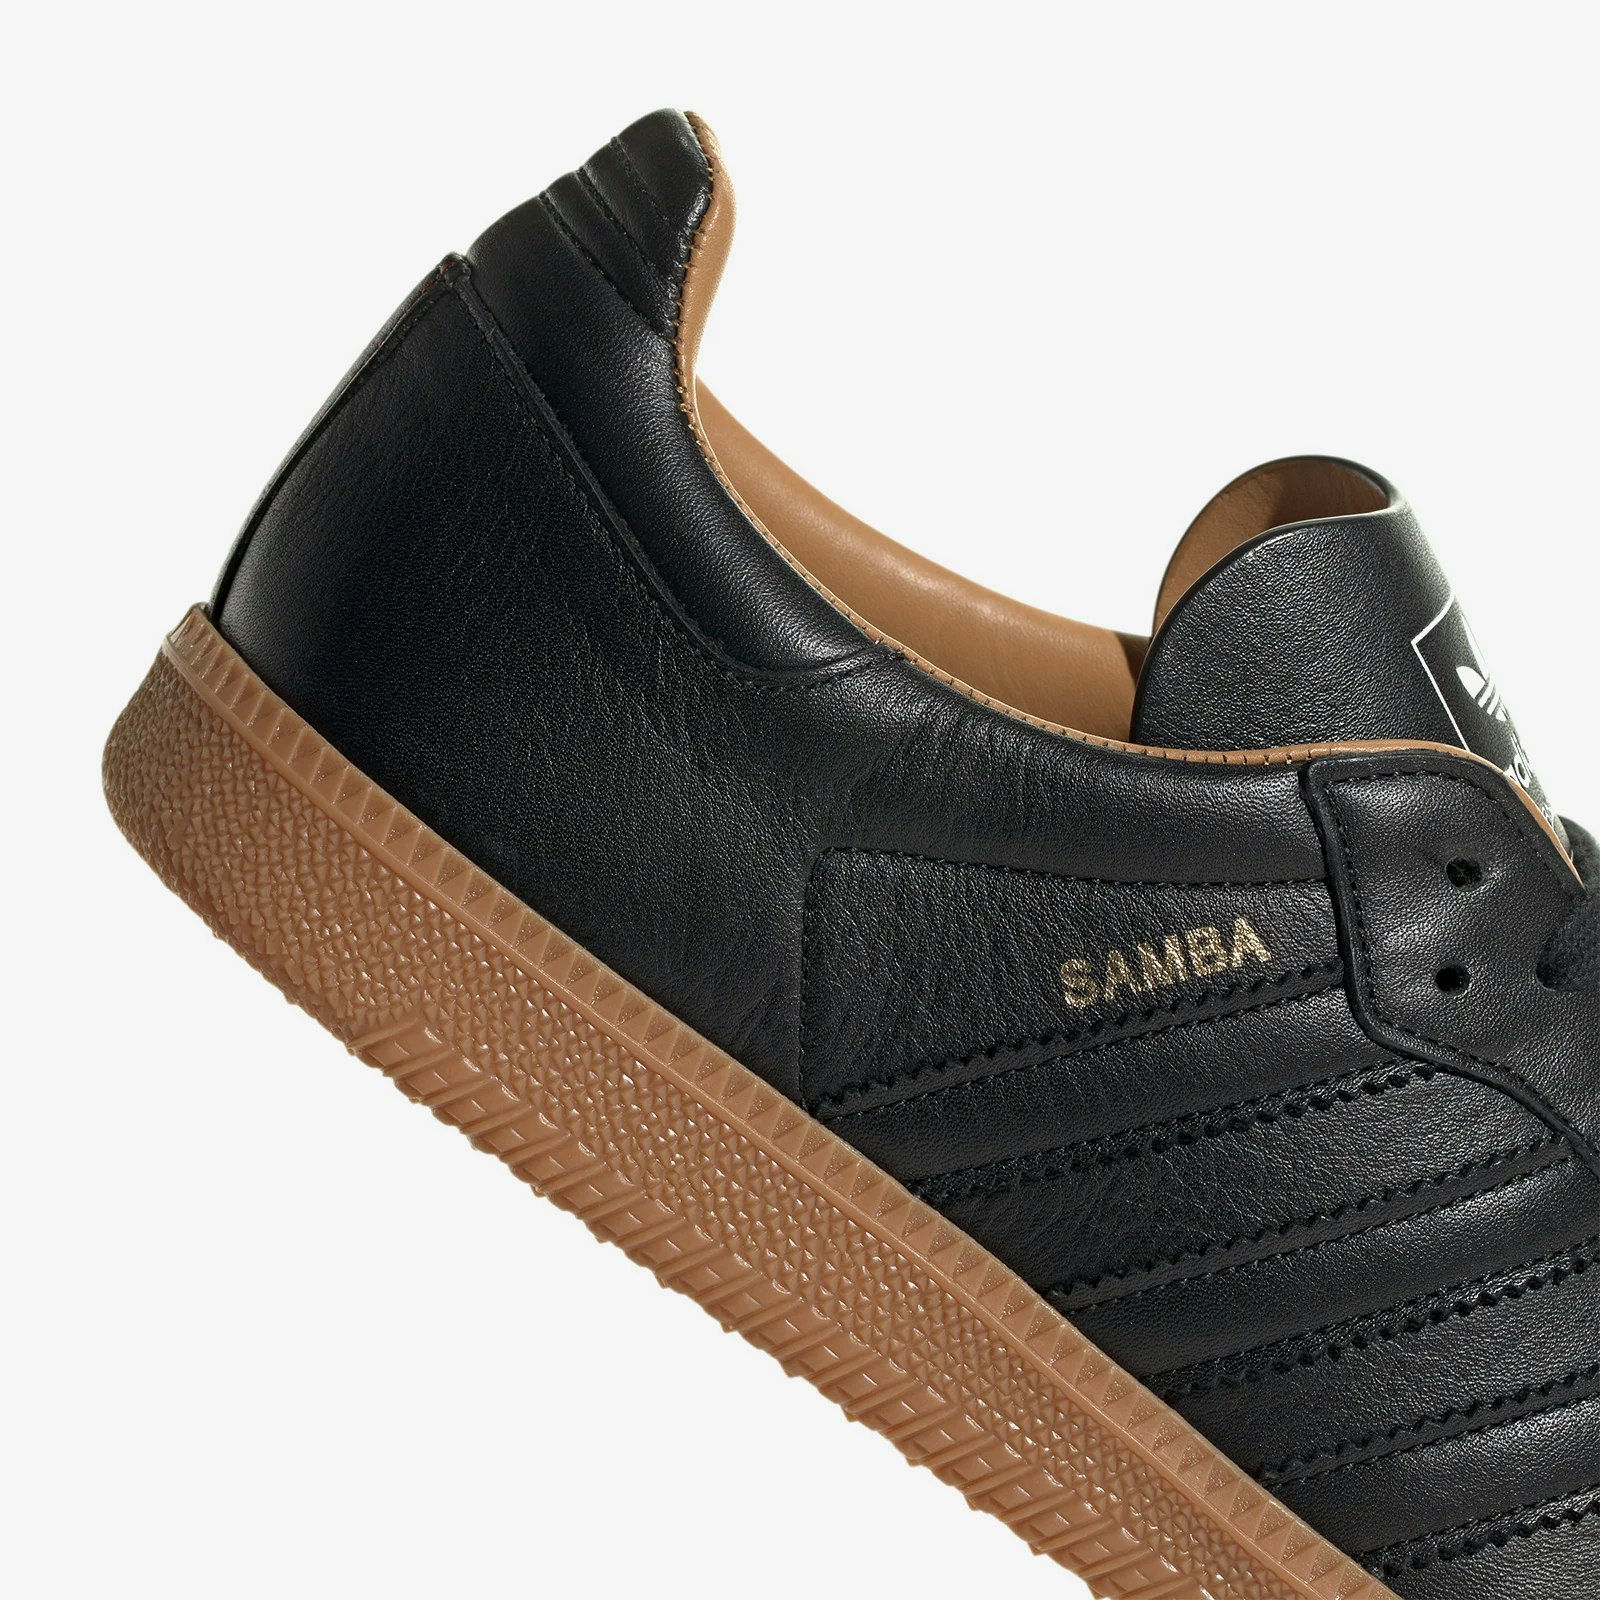 adidas Samba OG "Made in Italy" (Core Black)